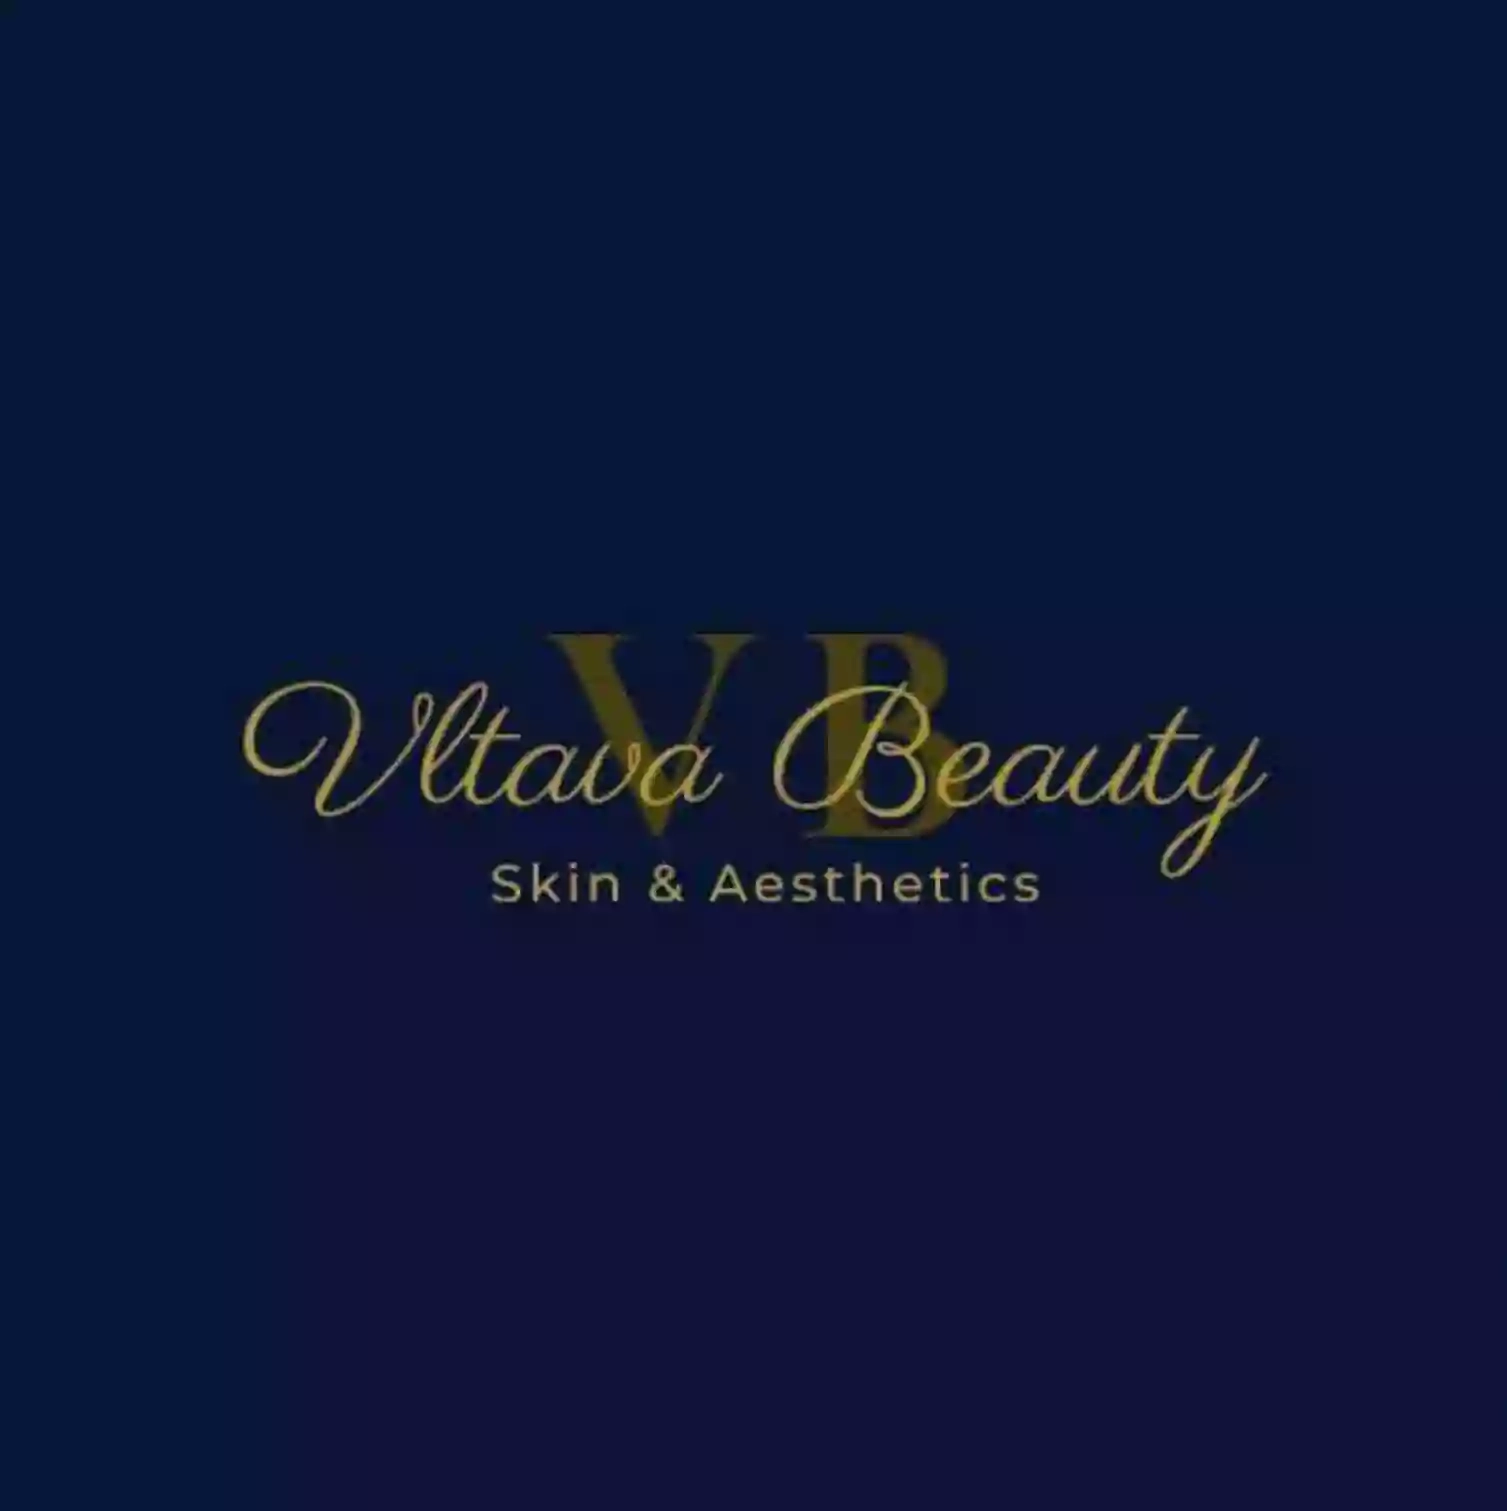 Vltava Beauty, Skin & Aesthetics